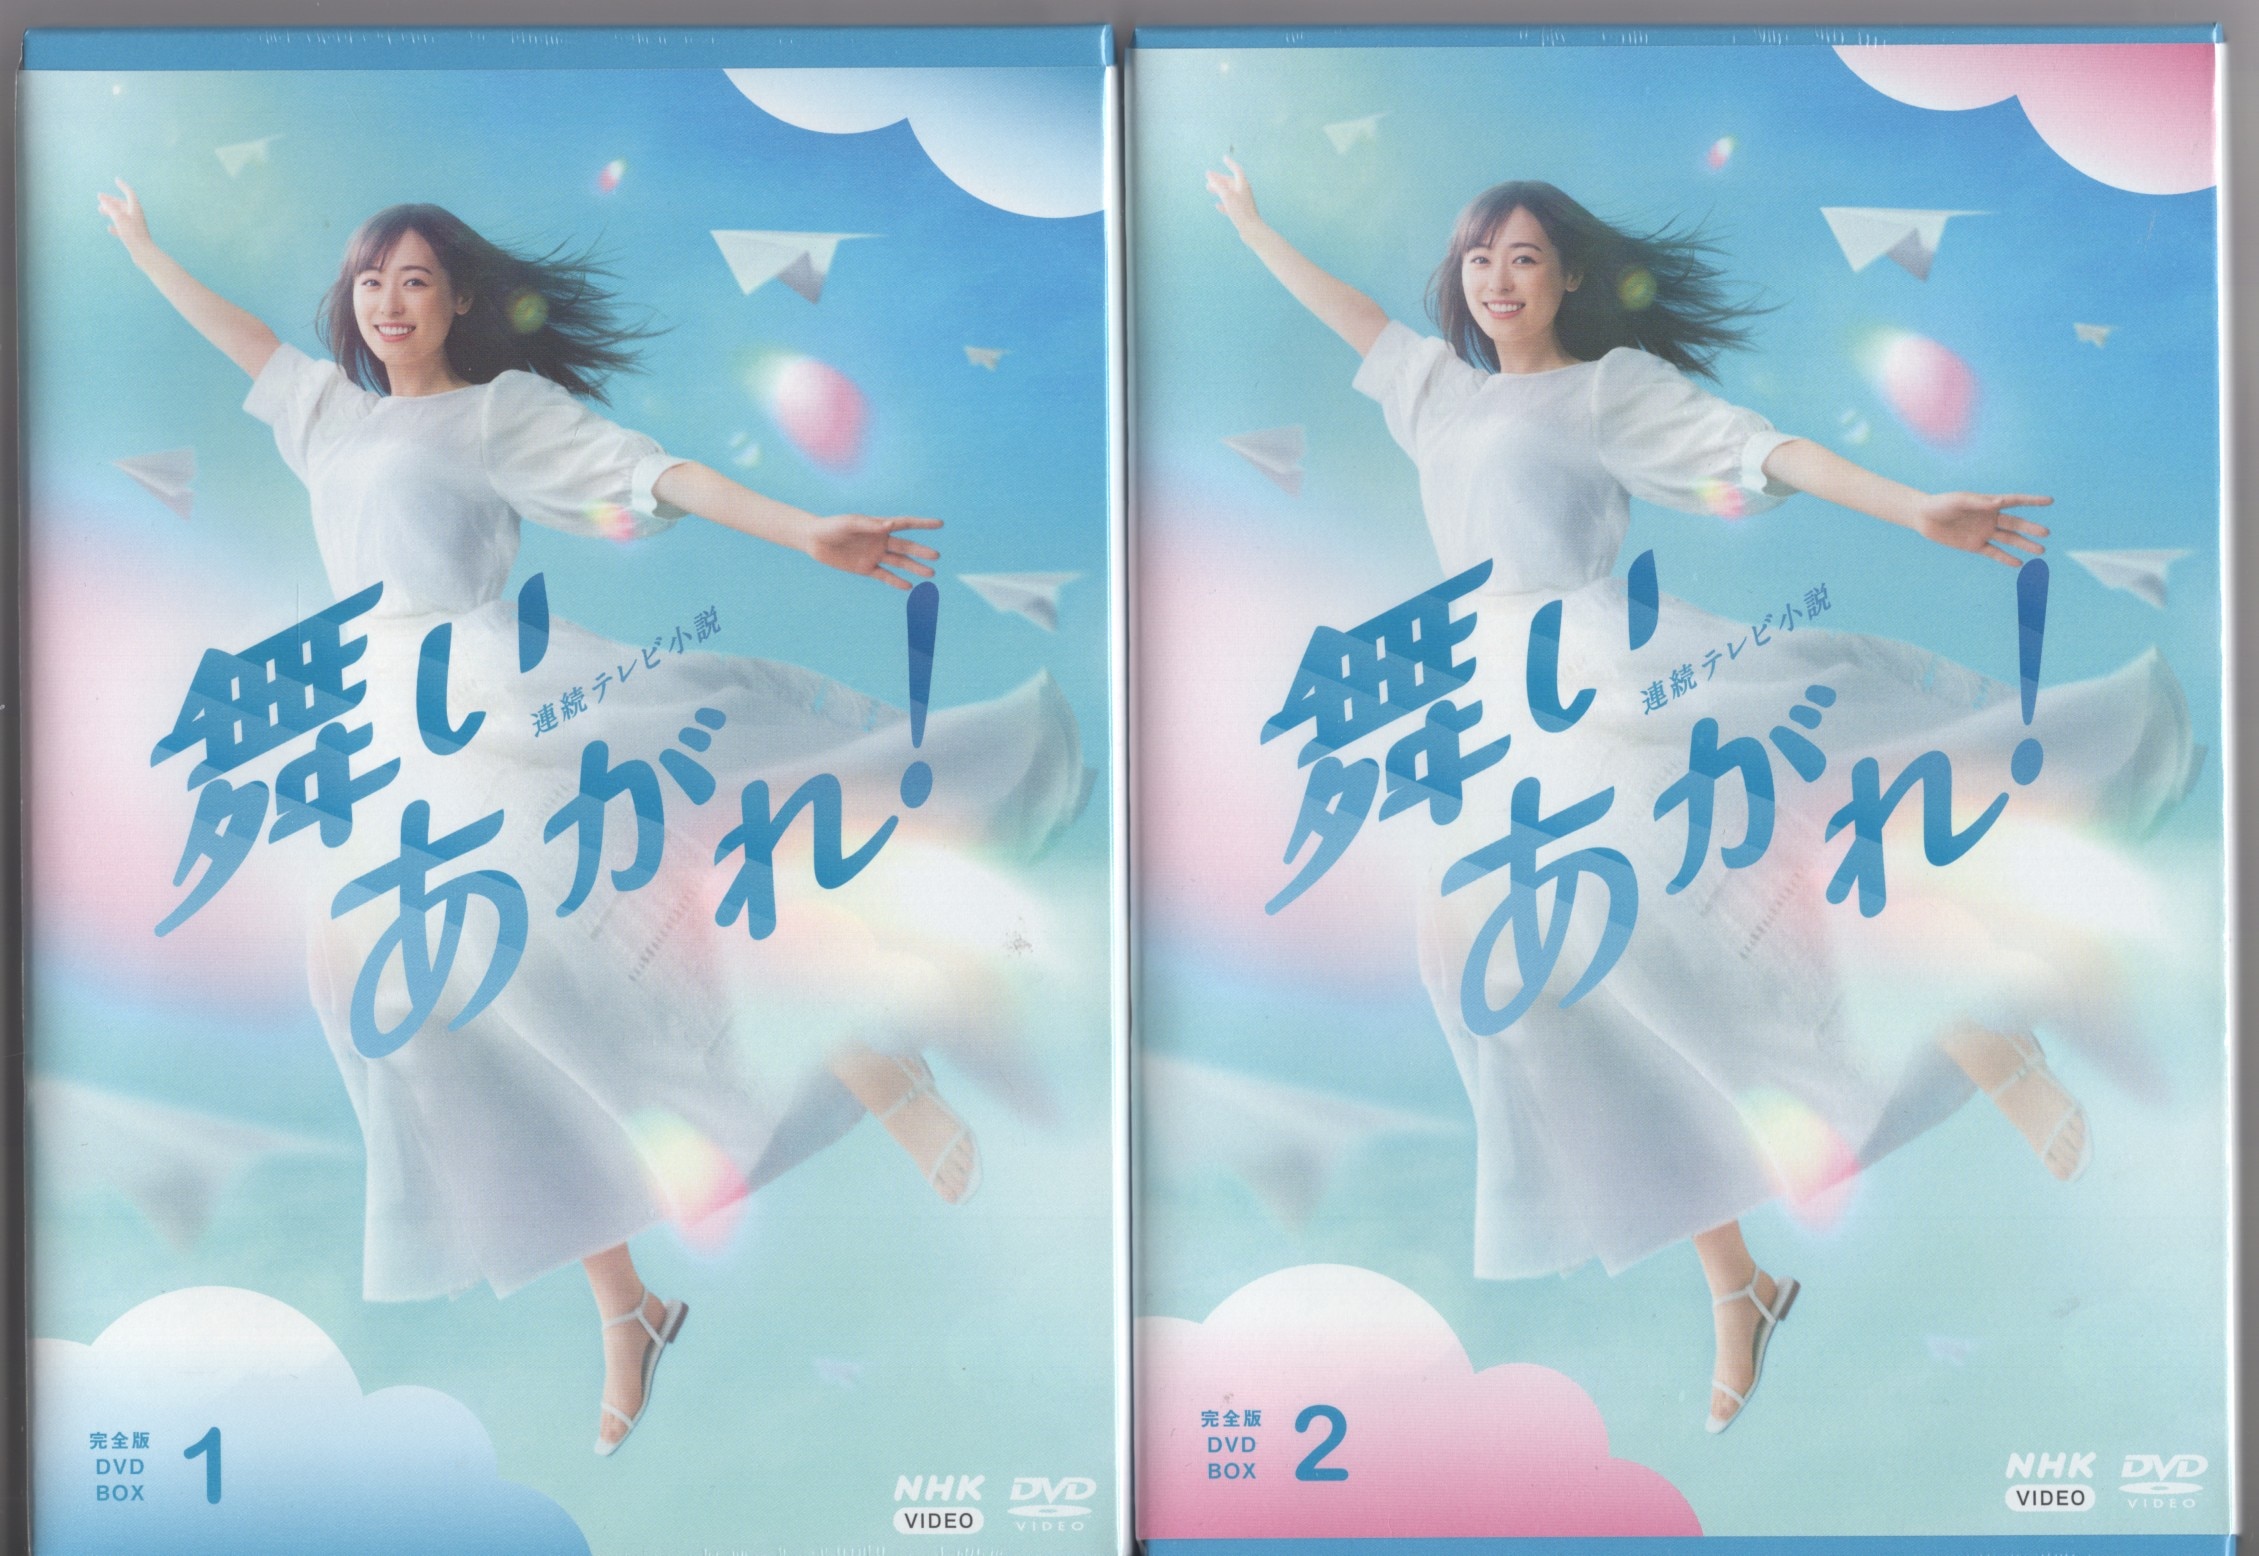 舞いあがれDVD連続テレビ小説 舞いあがれ! 完全版 DVD BOX 1/2/3